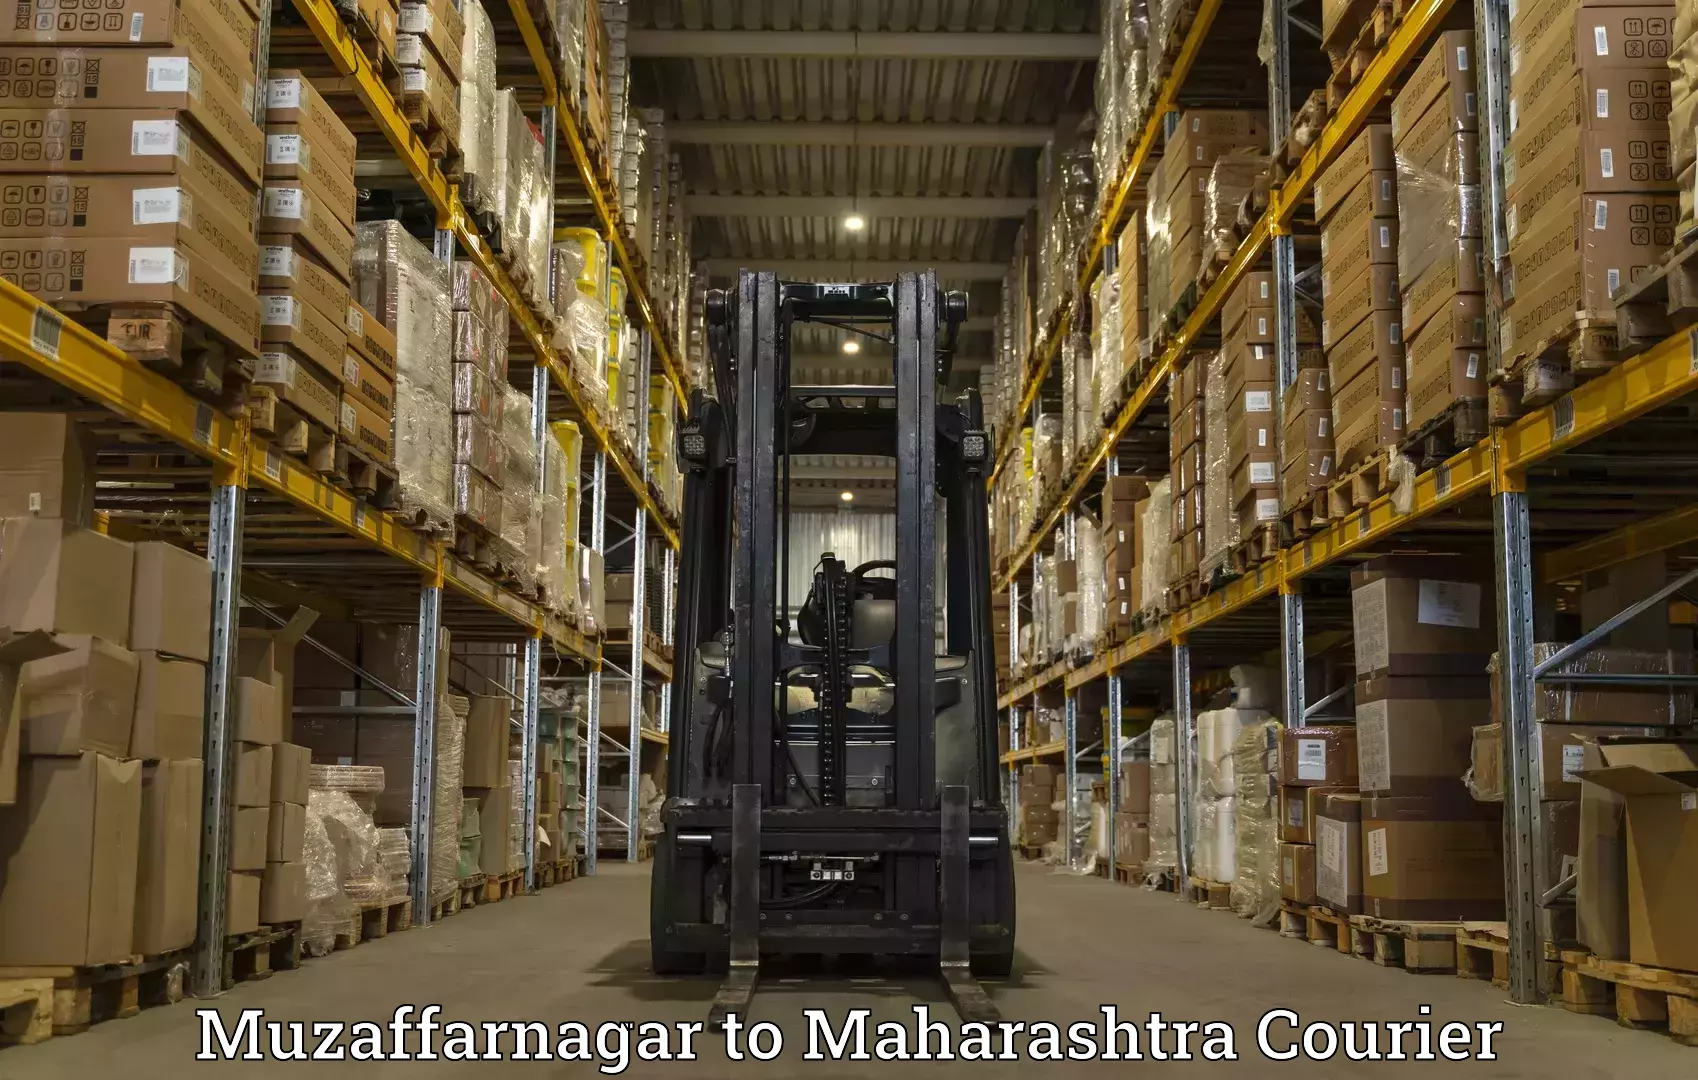 Quality courier services in Muzaffarnagar to Kopargaon